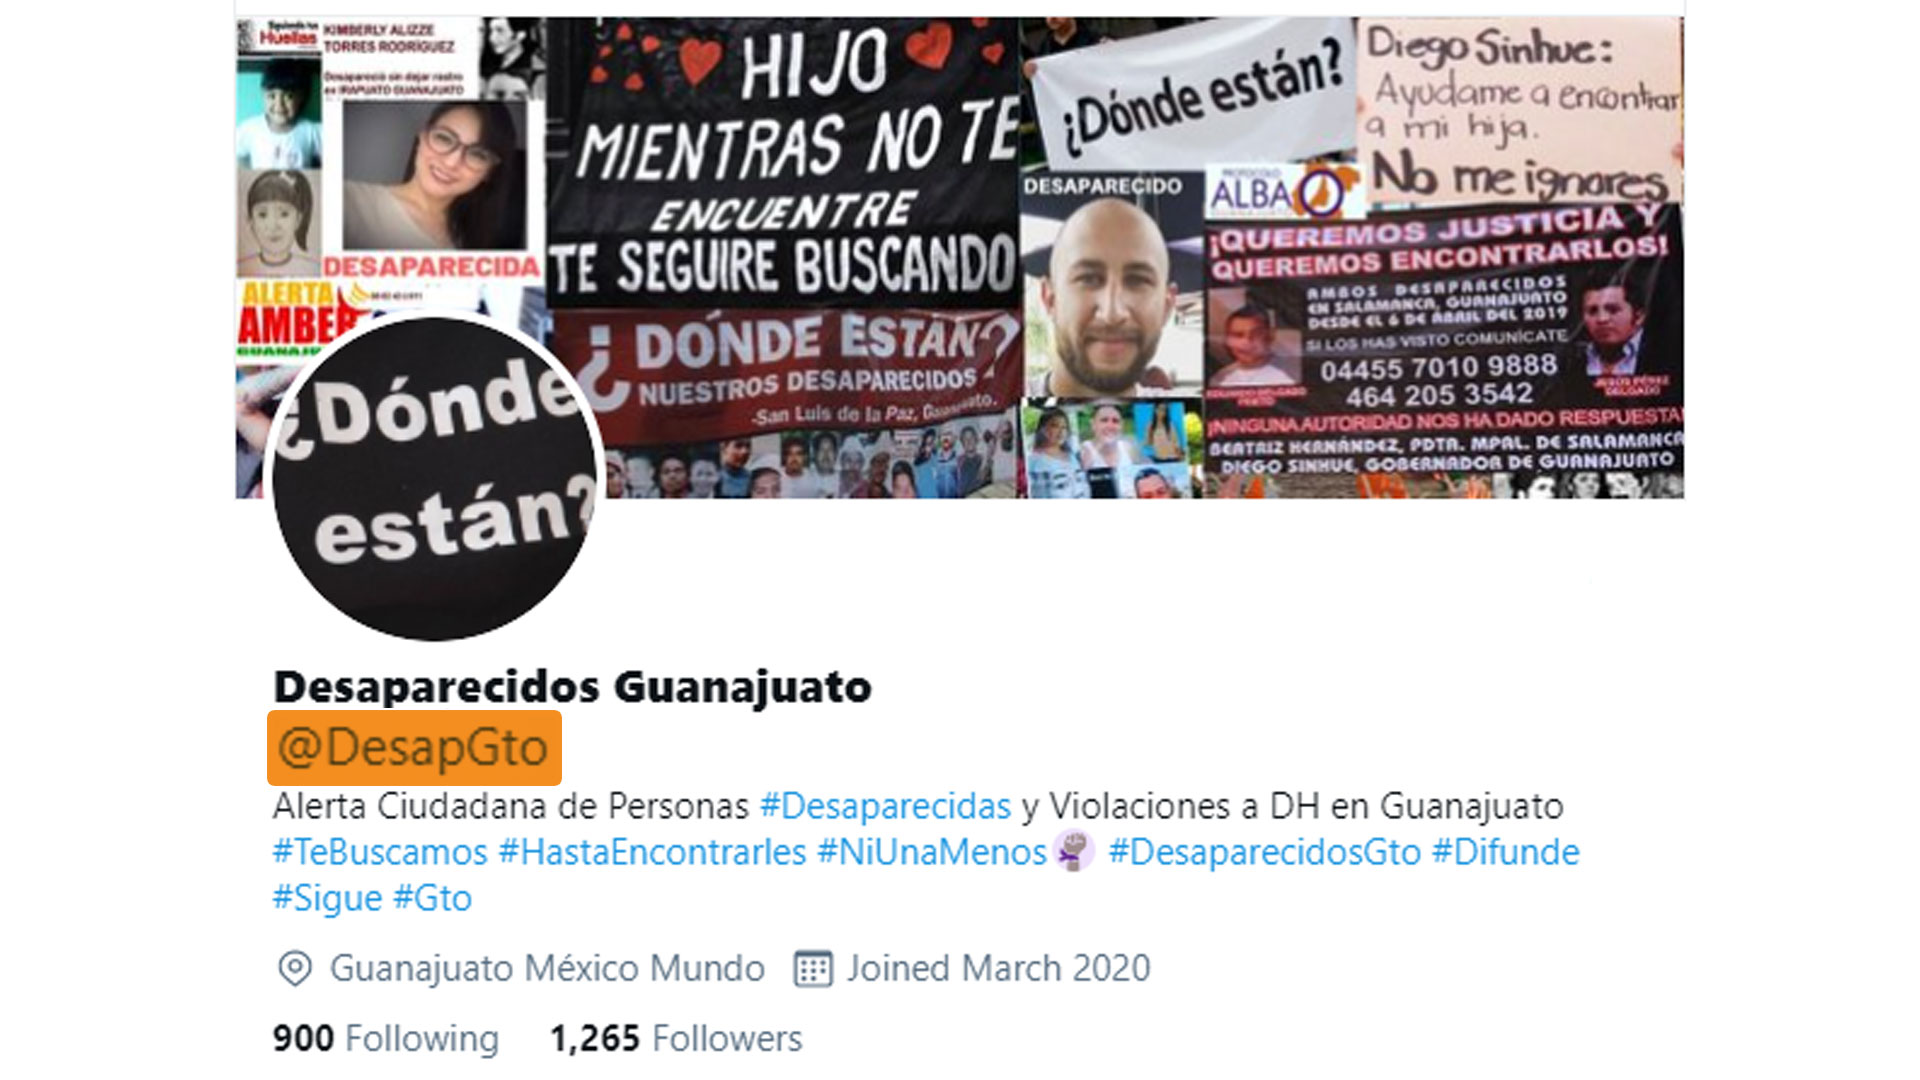 Desaparecidos Guanajuato es una página donde se alerta sobre los ciudadanos desaparecidos